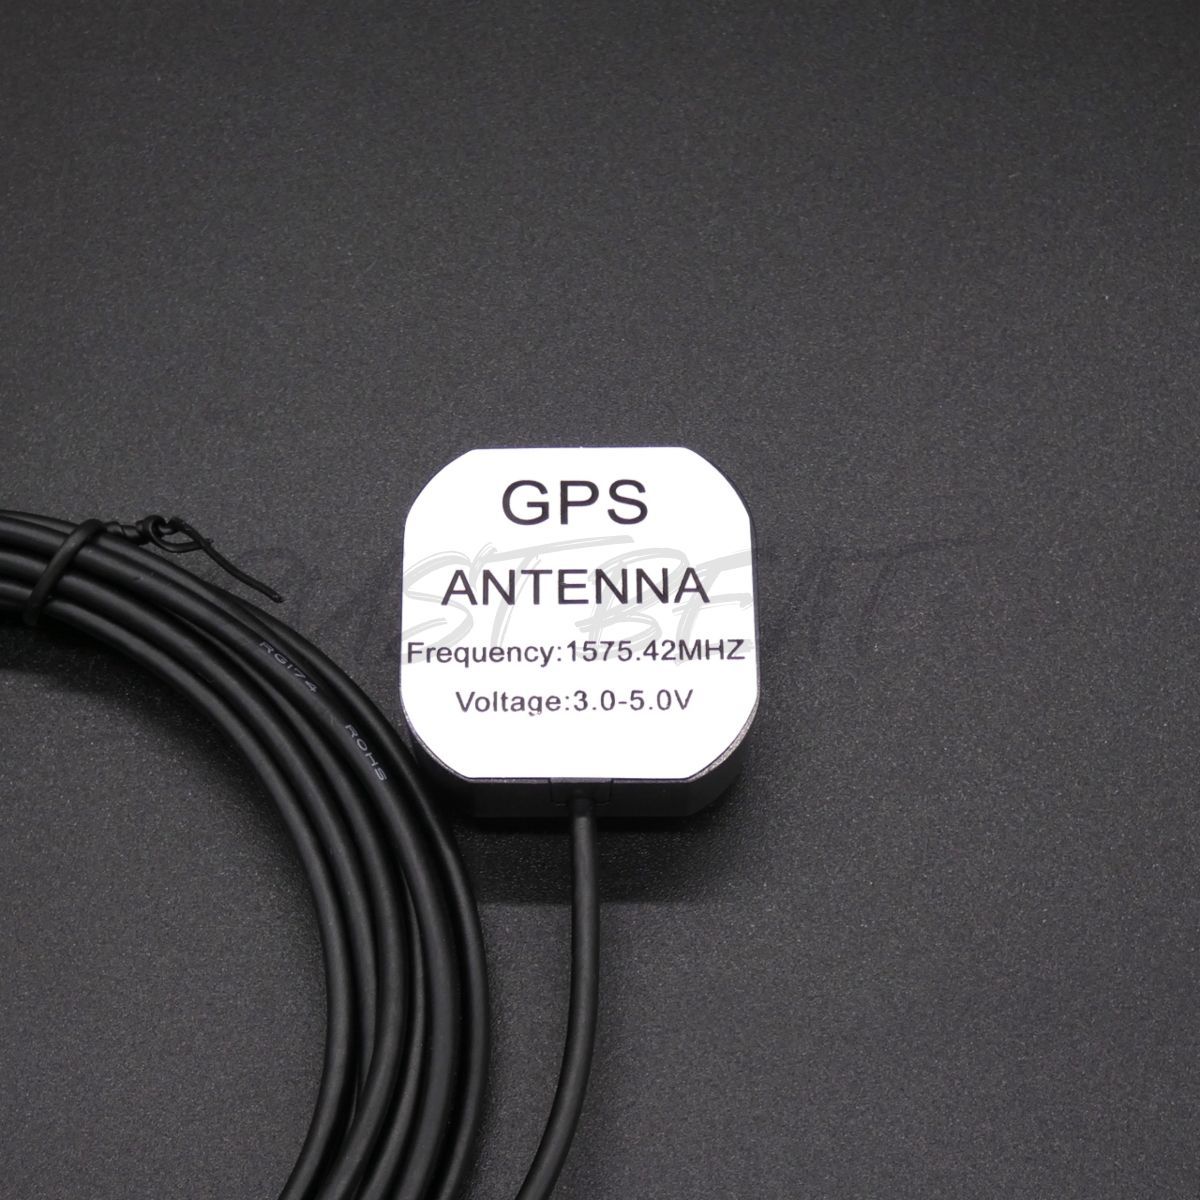 スズキ 純正 GCX111 対応 カーナビ GPS アンテナ アースプレート GT5